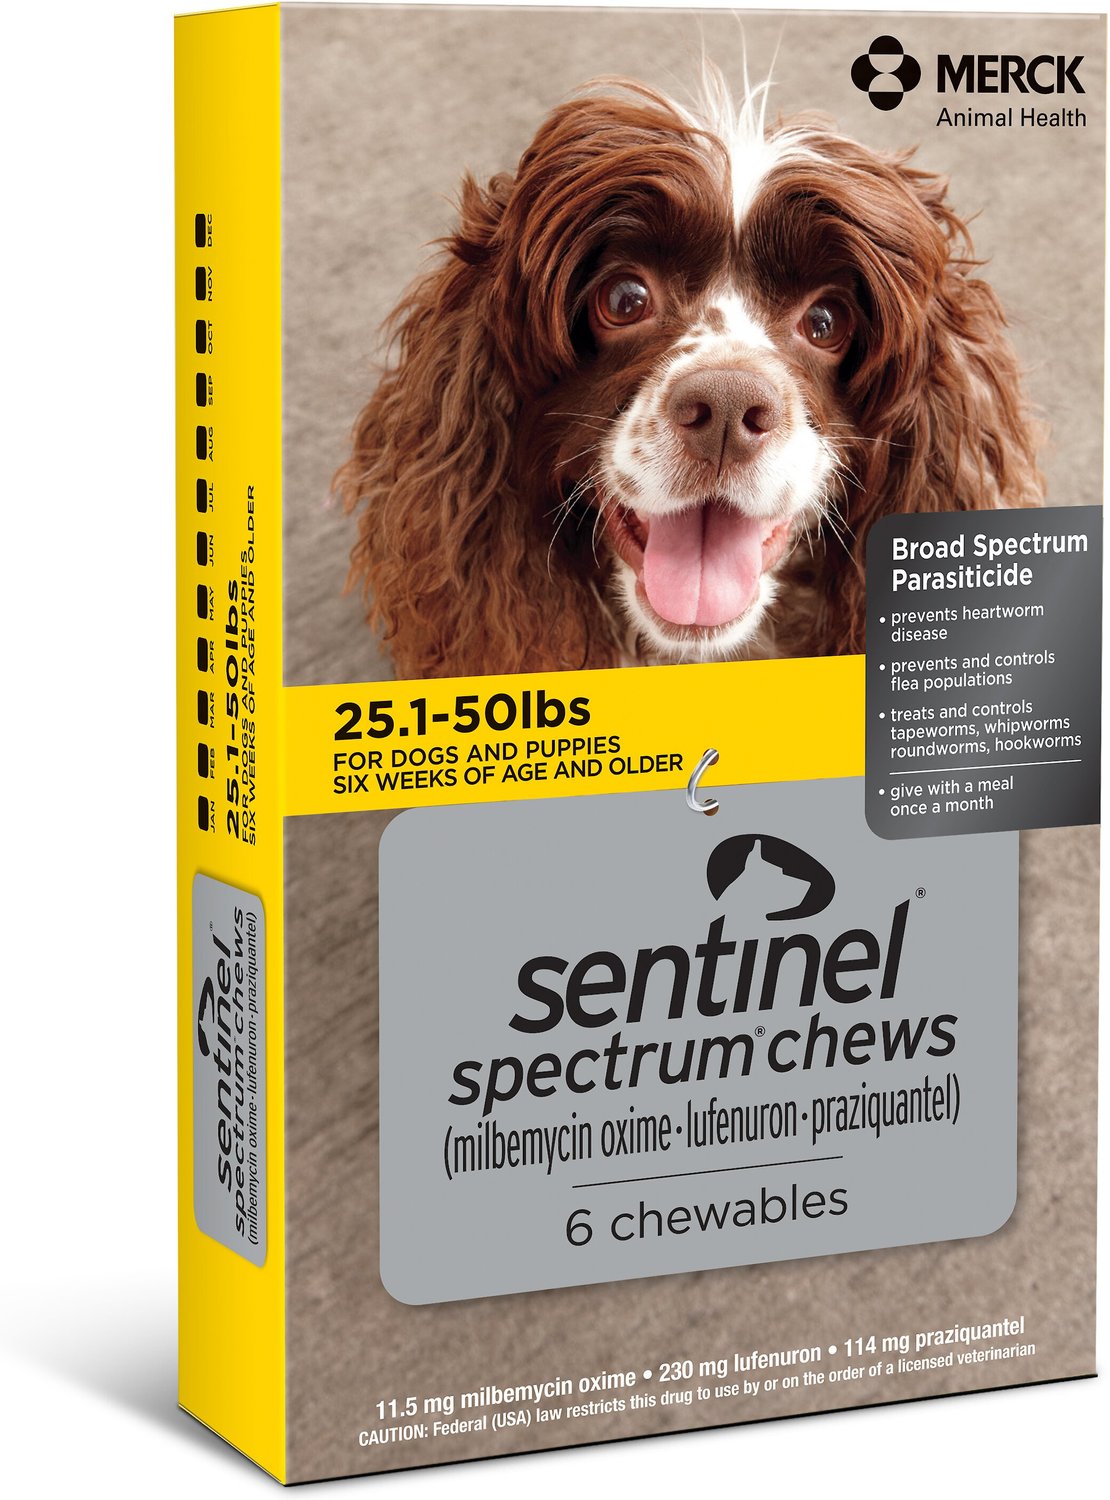 sentinel spectrum for puppies